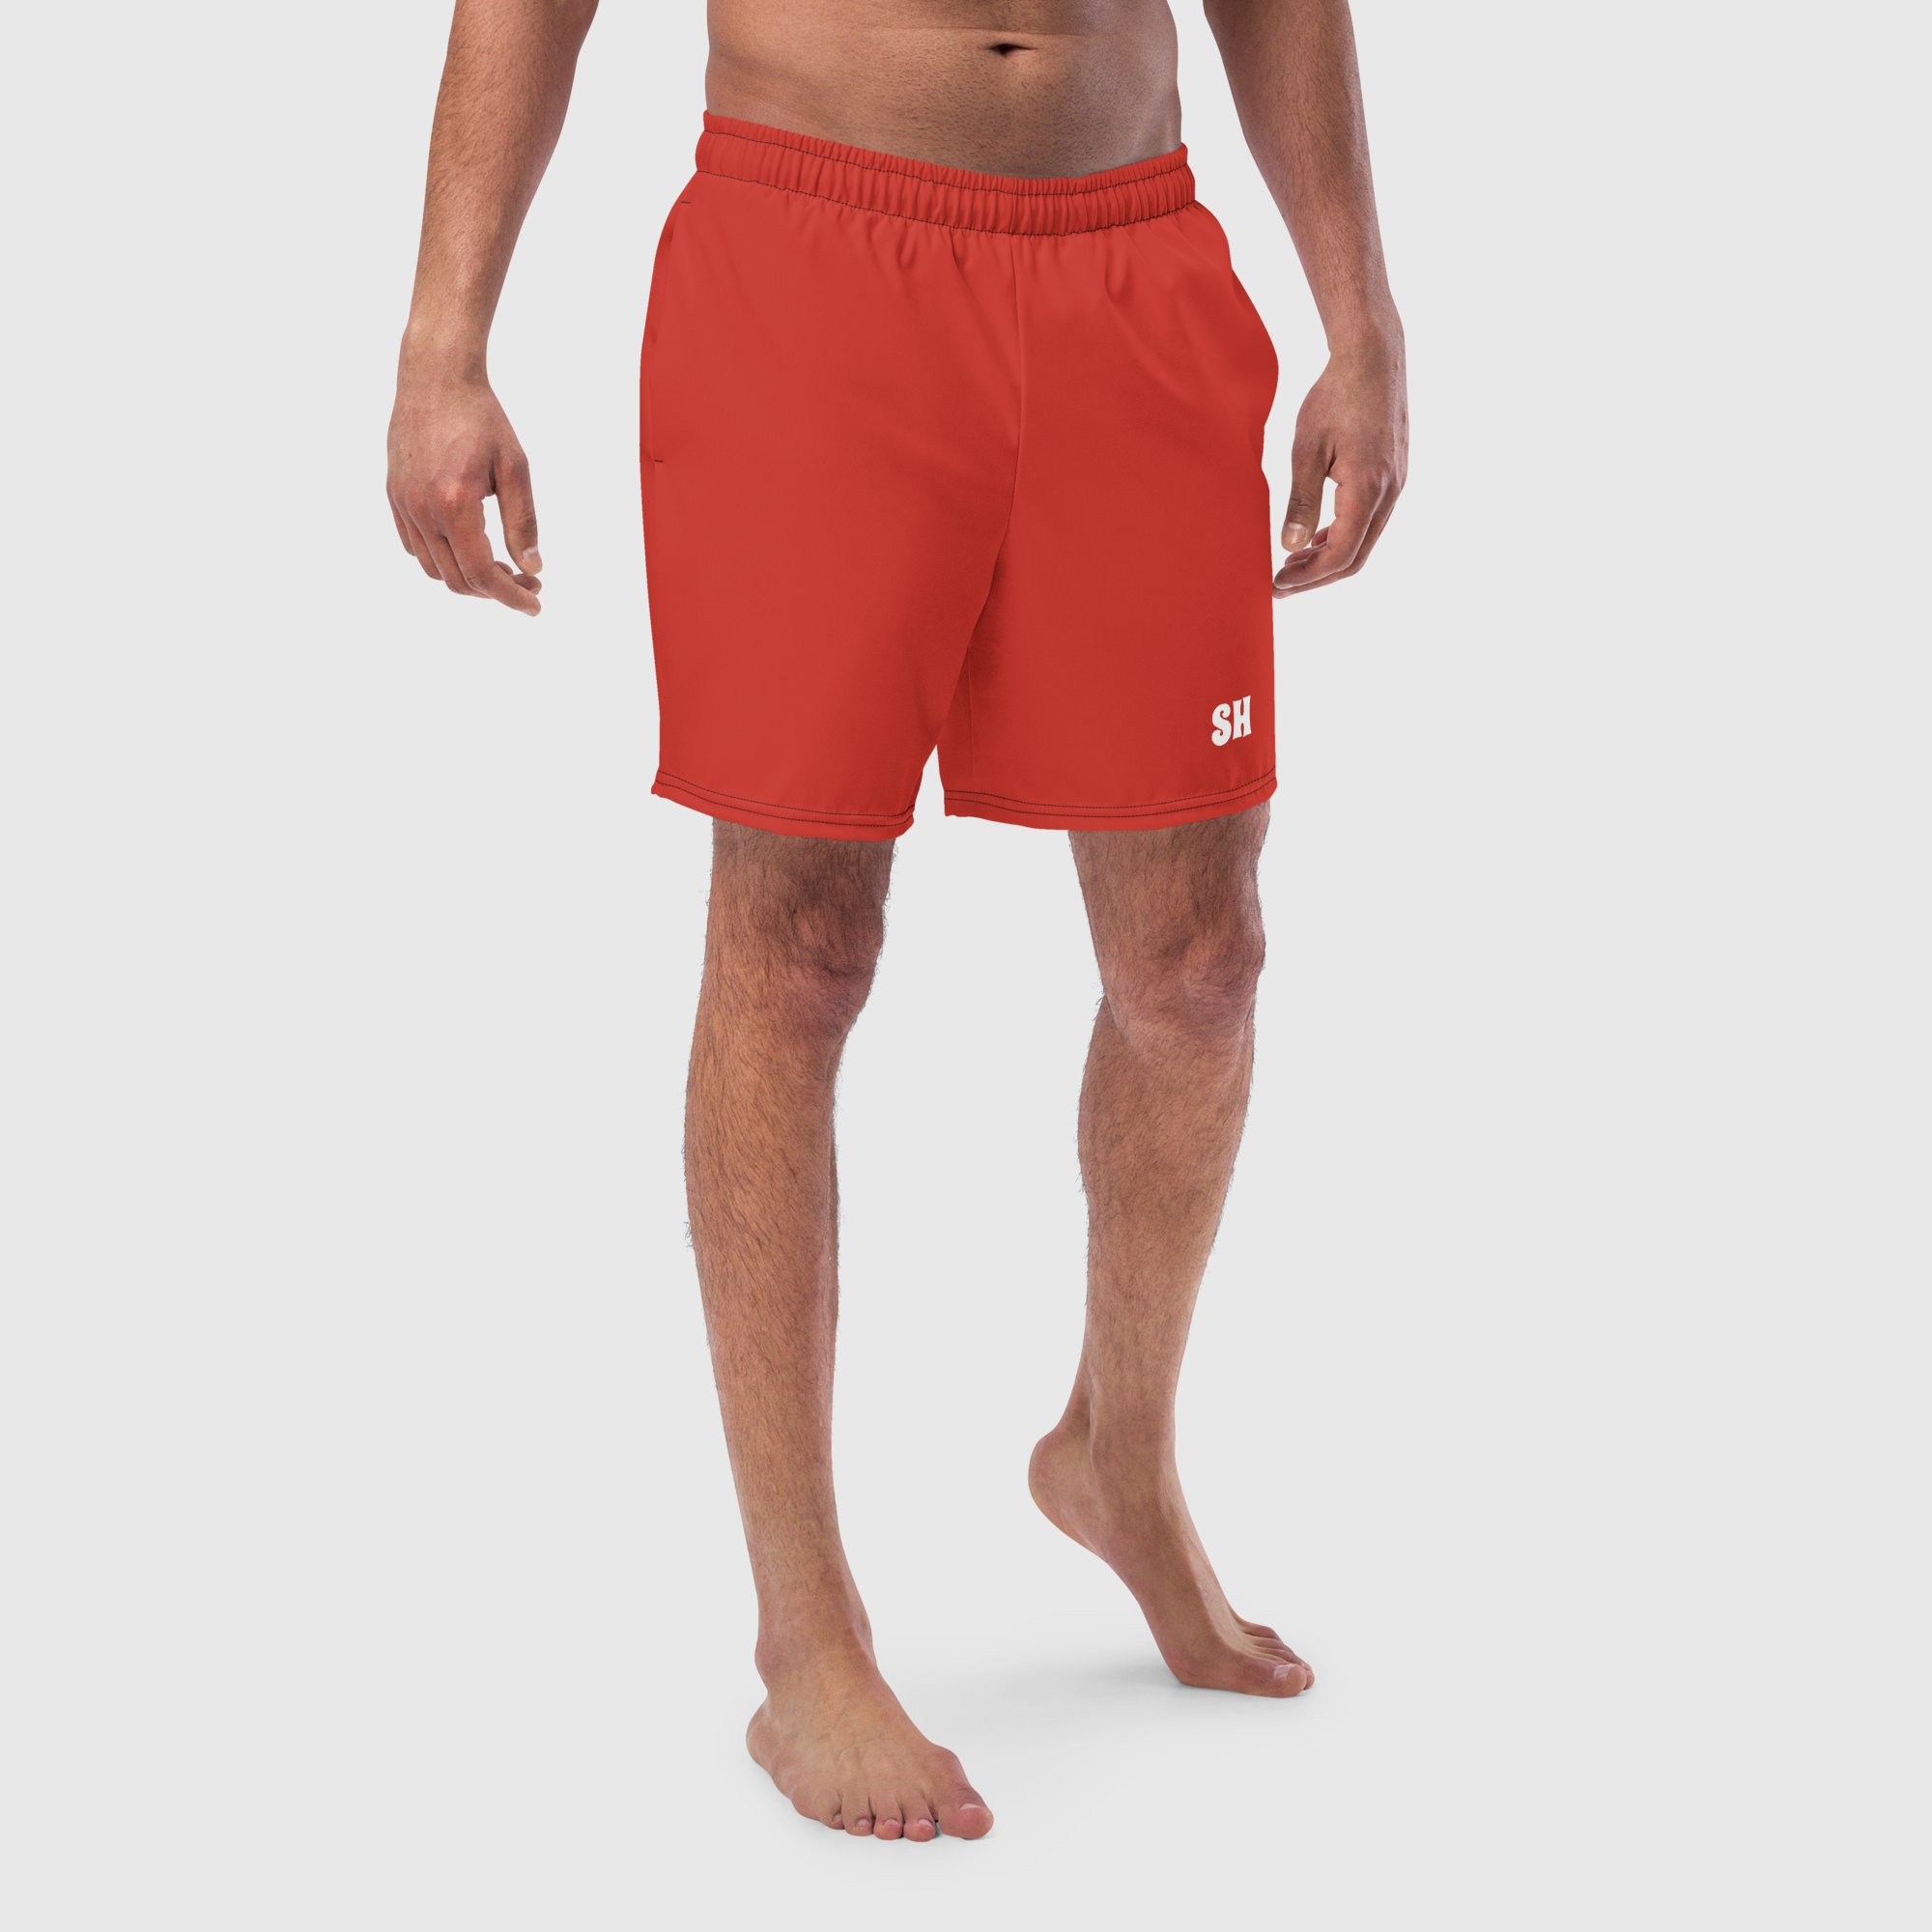 Men's swim trunks - Red